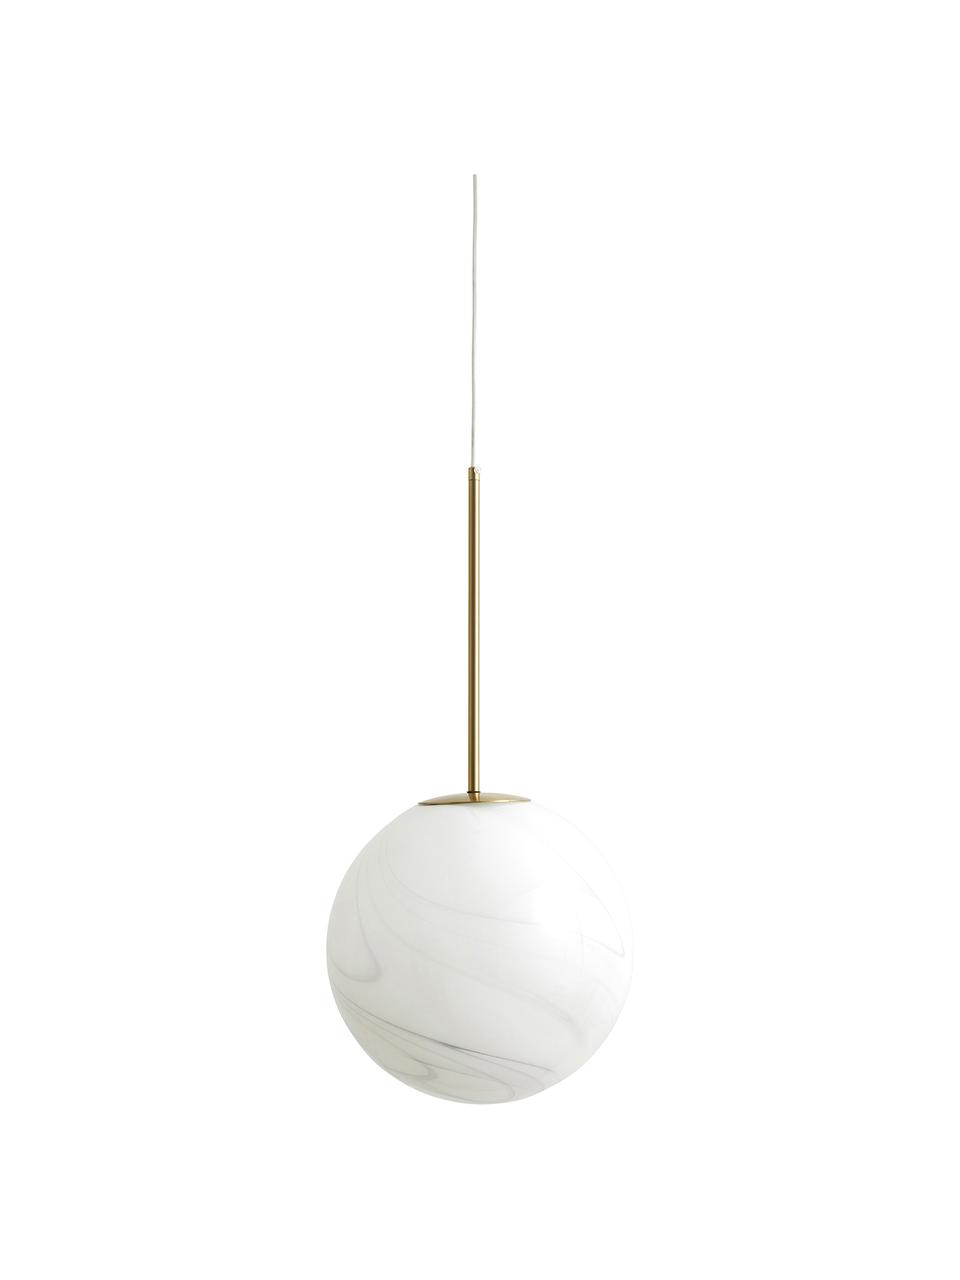 Lampada sferica piccola a sospensione bianca Fauna, Baldacchino: metallo rivestito, Bianco, dorato, Ø 25 x Alt. 55 cm